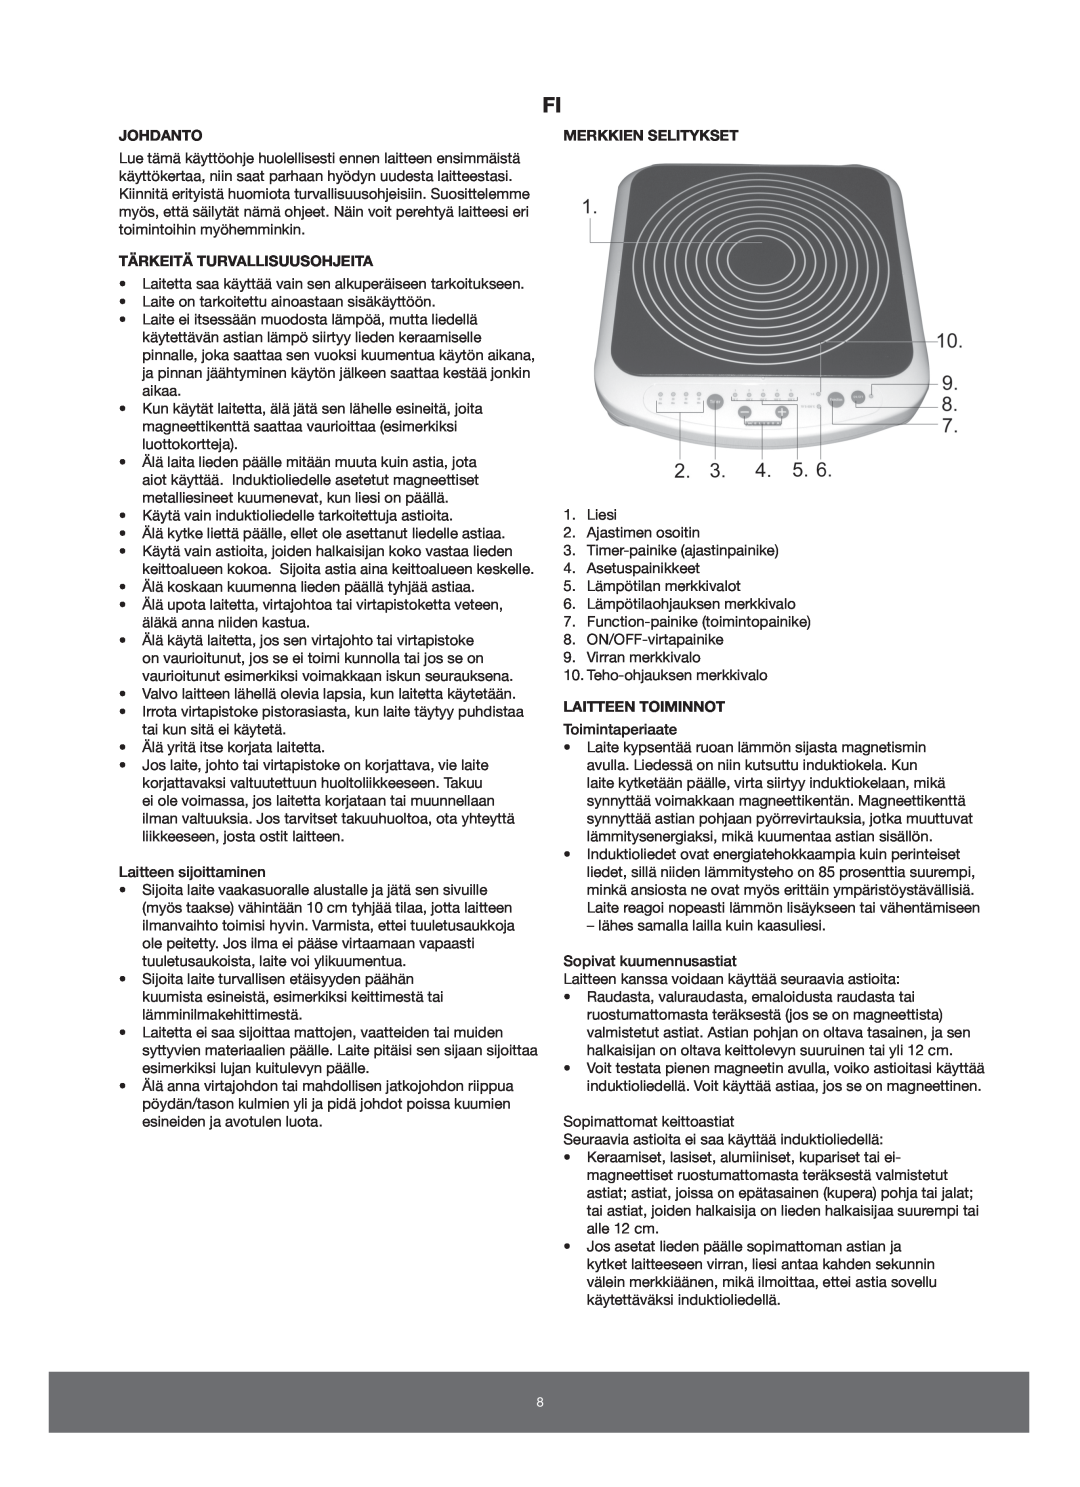 Melissa 650-005/006 manual Johdanto, Tärkeitä Turvallisuusohjeita, Merkkien Selitykset, Laitteen Toiminnot 